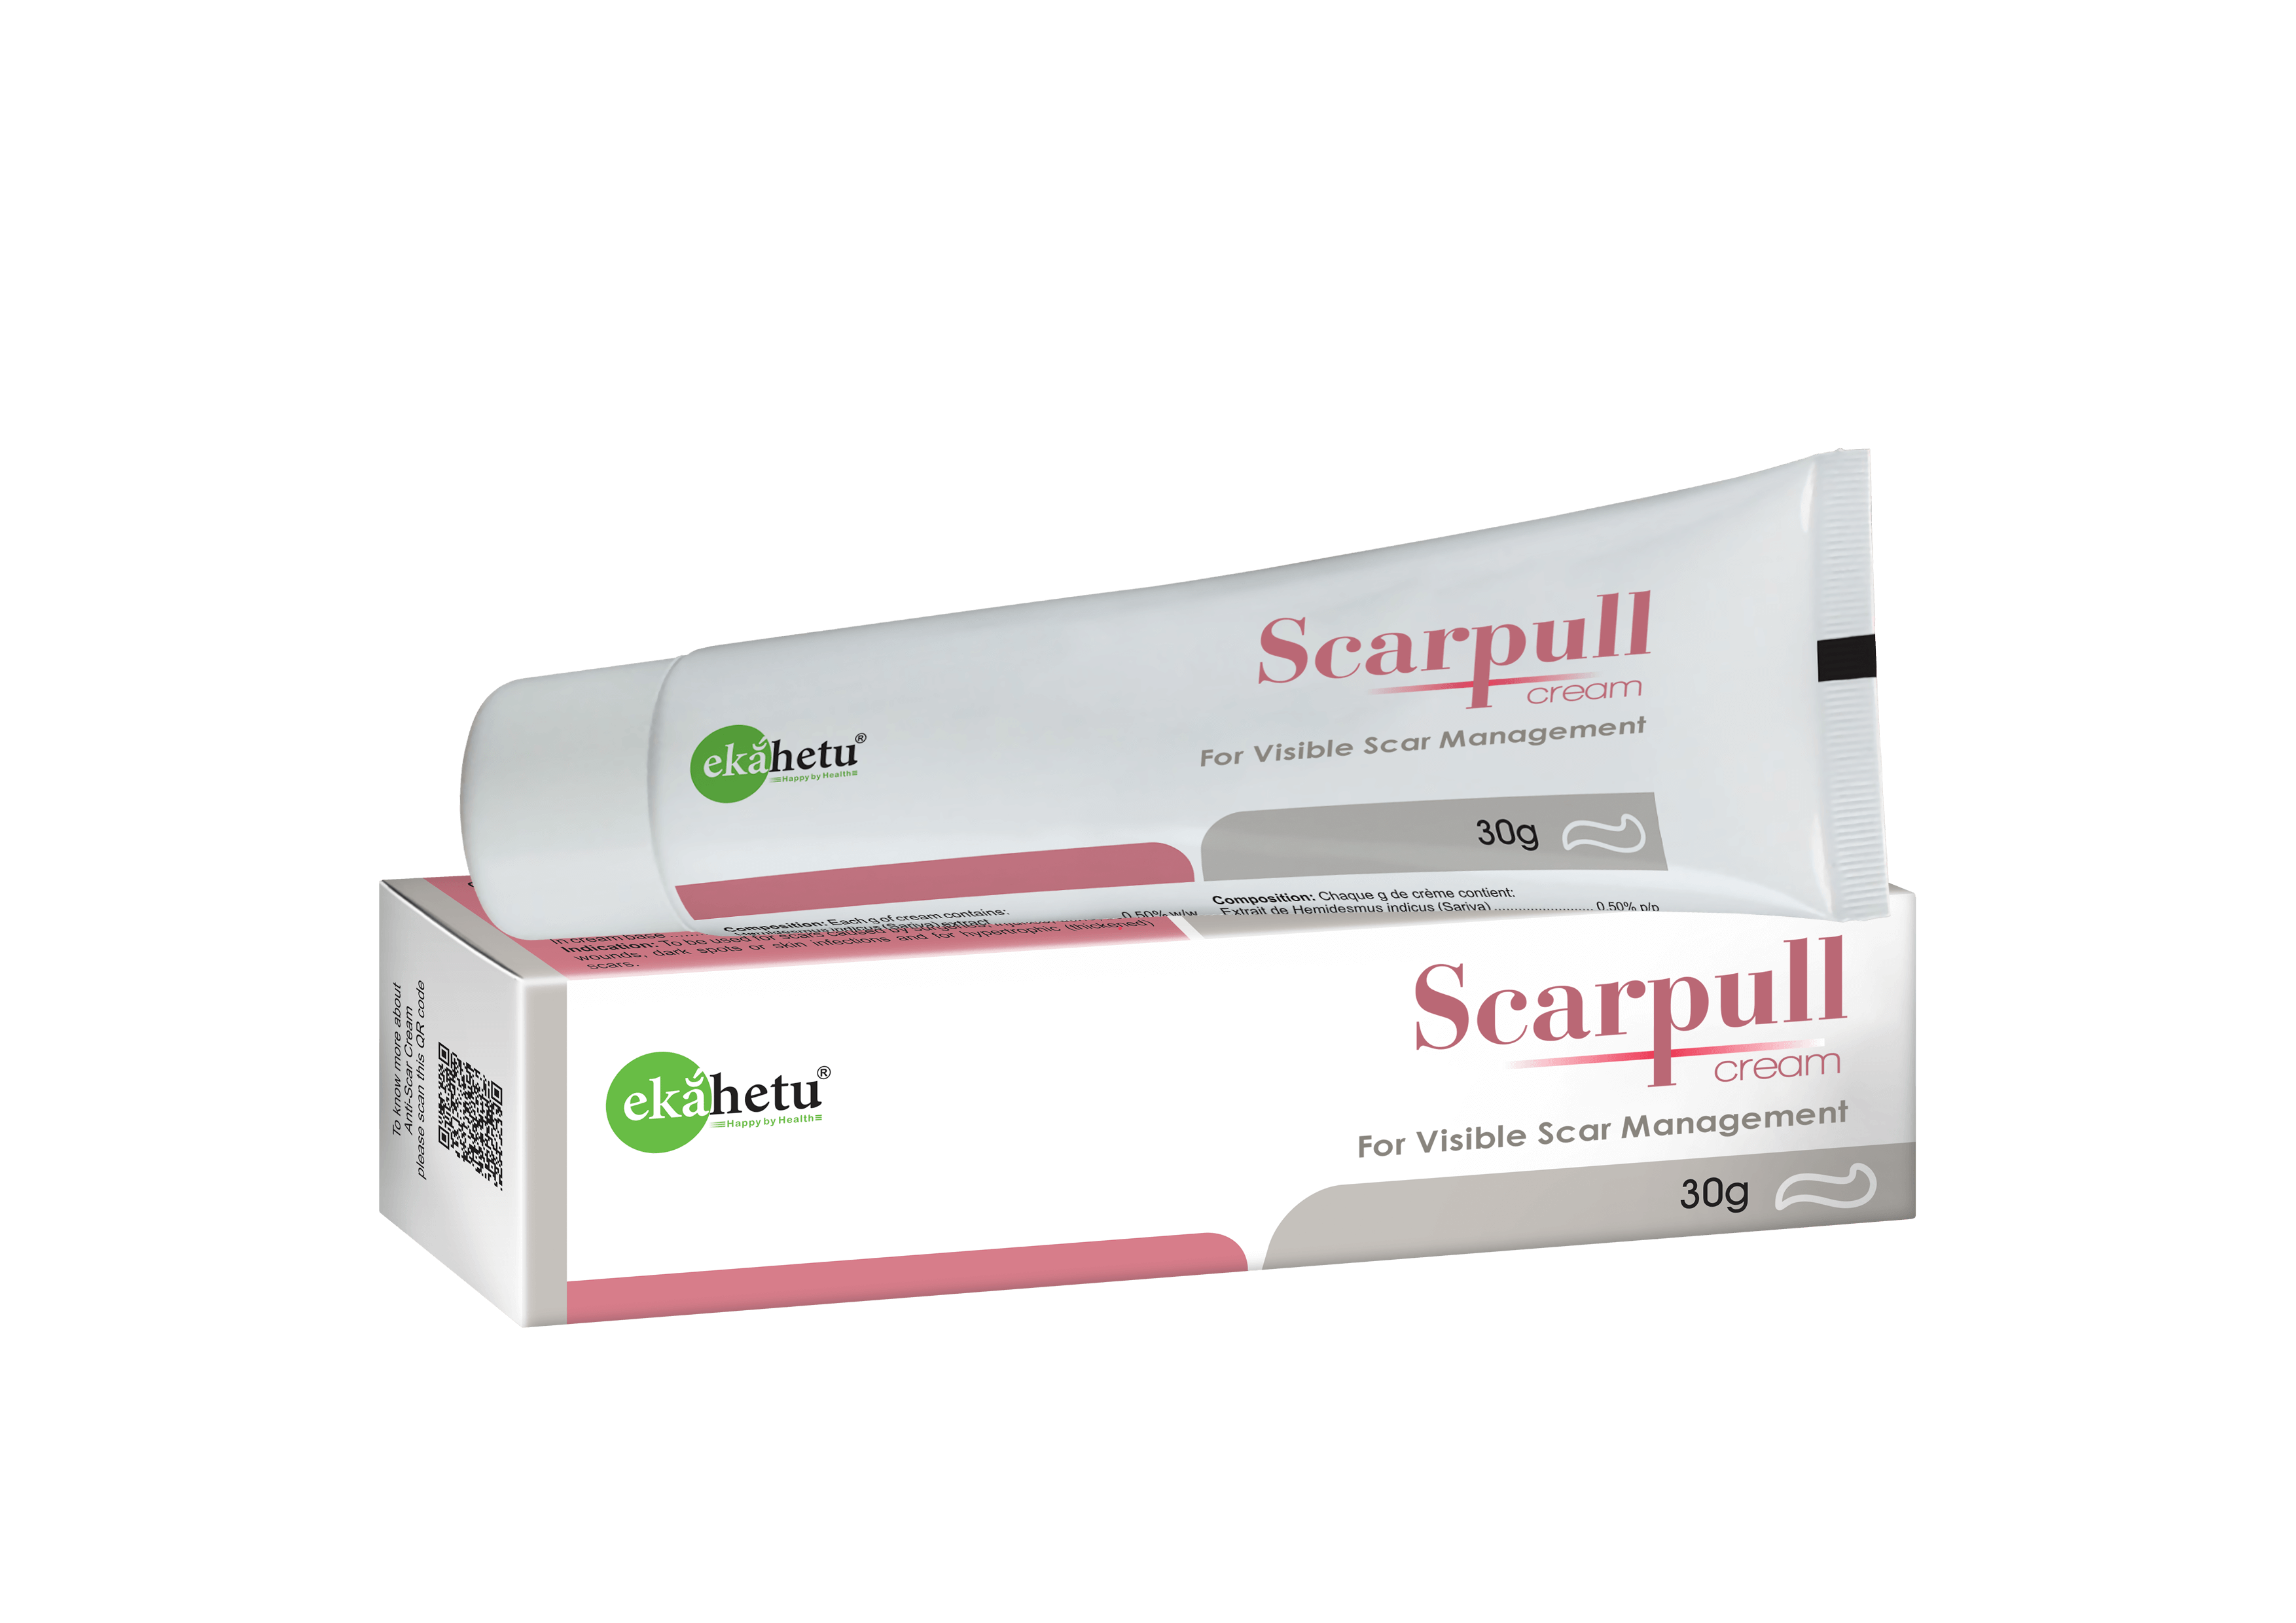 Scarpull cream